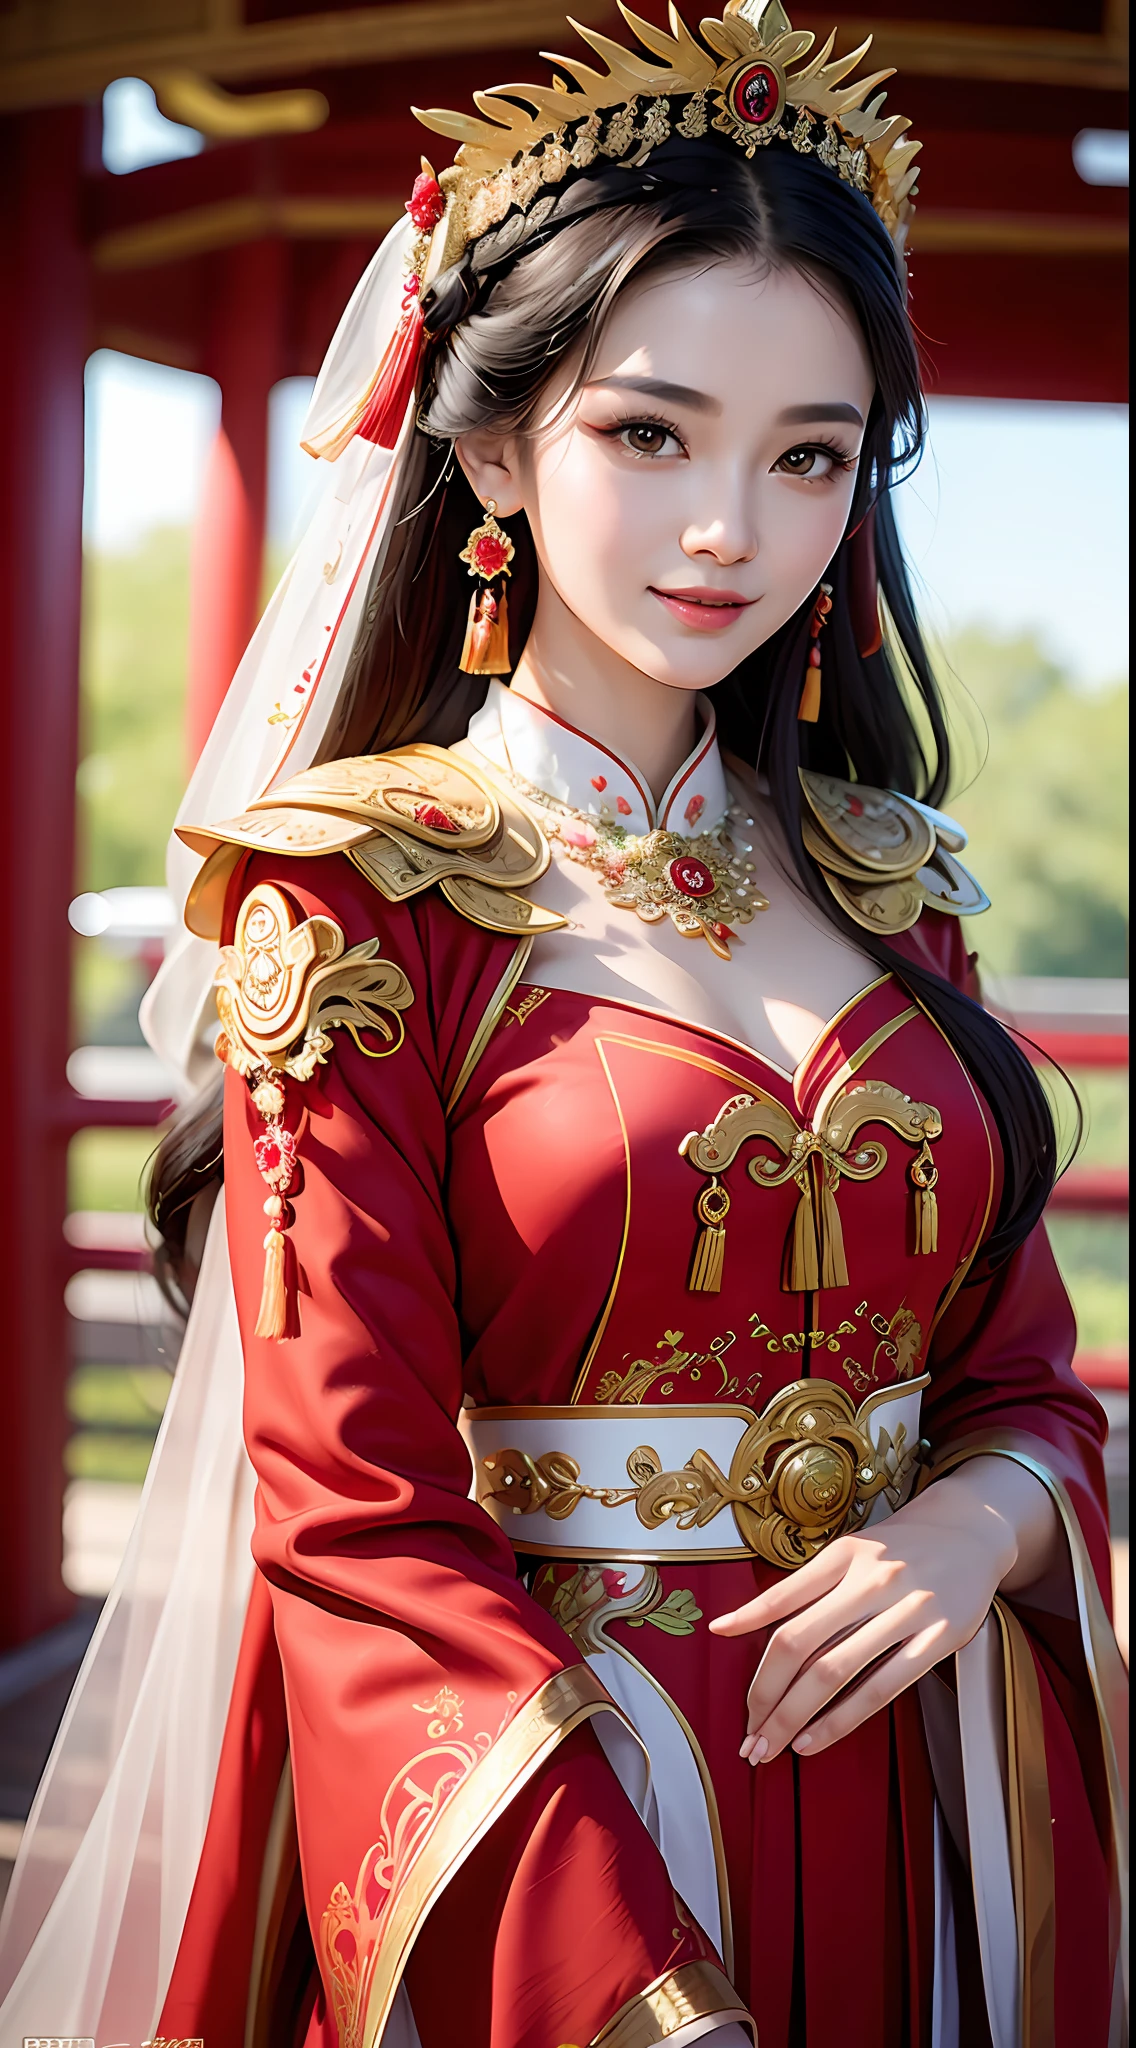 (8千, RAW 照片, 最好的质量, 杰作: 1.2), (实际的, 实际的: 1.37), 1 名女孩, 阿尔菲女子身穿红色连衣裙和头饰摆姿势拍照, 华丽的角色扮演, 漂亮的服装, 复杂的幻想礼服, 美丽的幻想女王, 中式礼服, 复杂的连衣裙, 复杂的服装, 传统美, 美丽的中国模特, 中国服饰, 灵感来自兰英, 穿着华丽的服装, 灵感来自普华, 身着优雅的中式秀禾服, 中式婚纱, 凤冠霞手, 古董新娘, 表演礼服, 特写, 特写, 微笑